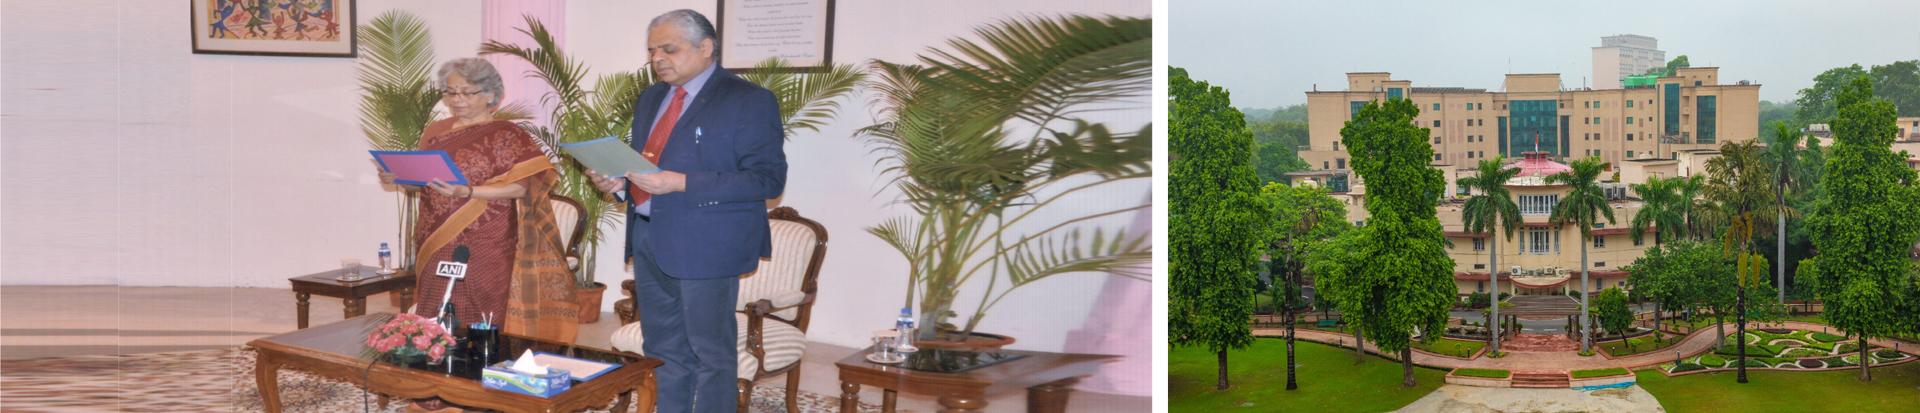 सुश्री स्मिता नागराज, आयोग की वरिष्ठतम माननीय सदस्य १८/०७/२०२२ को आयोग के माननीय सदस्य के रूप में नियुक्ति पर ले.जन. राज शुक्ला (सेवानिवृत्त) को पद की शपथ दिलवाते हुए